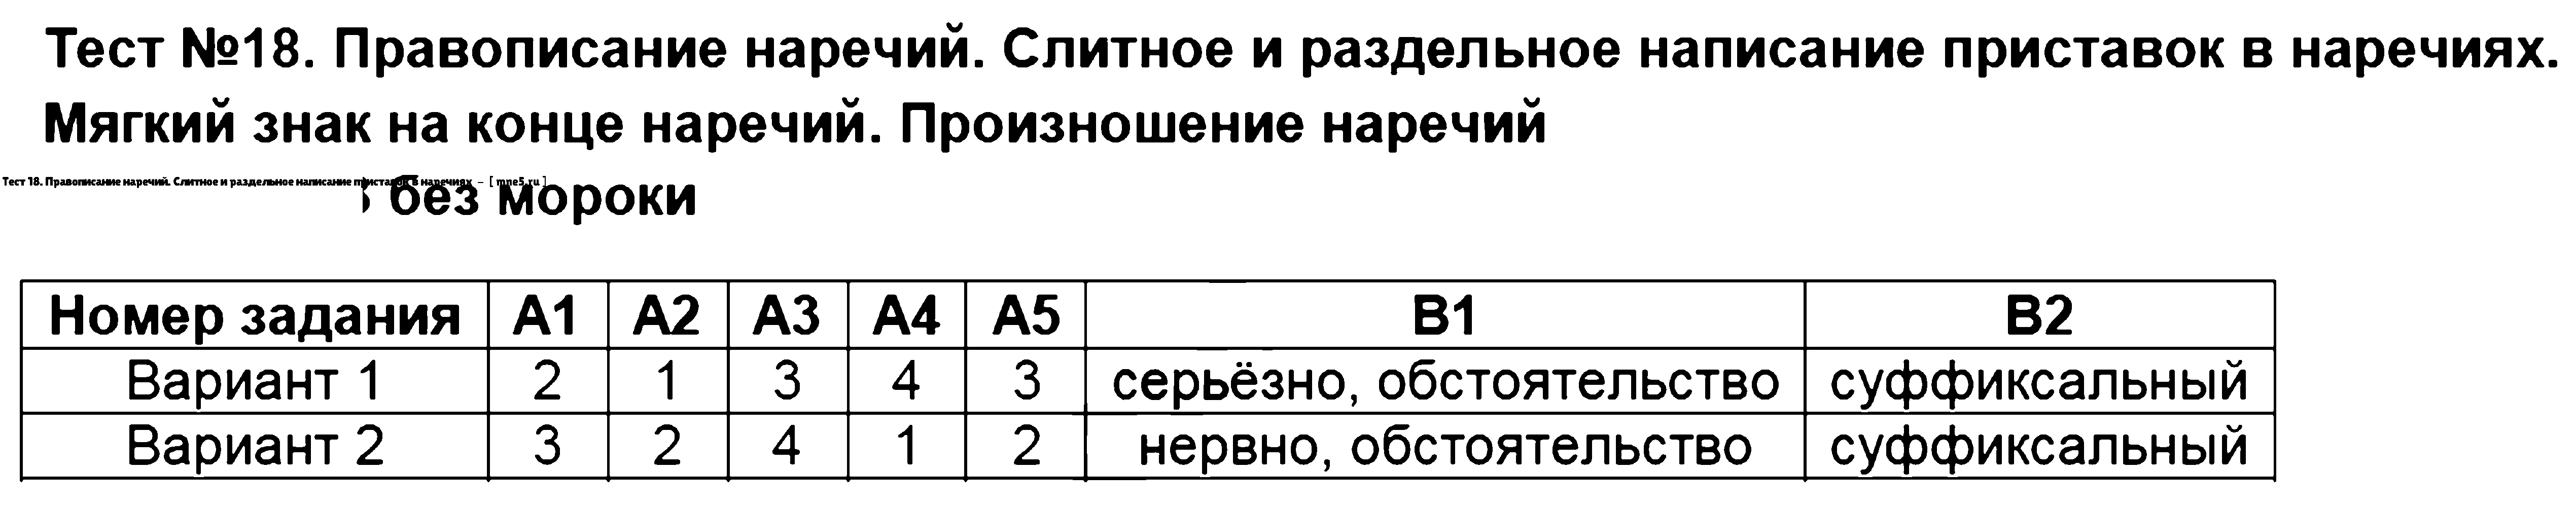 ГДЗ Русский язык 7 класс - Тест 18. Правописание наречий. Слитное и раздельное написание приставок в наречиях